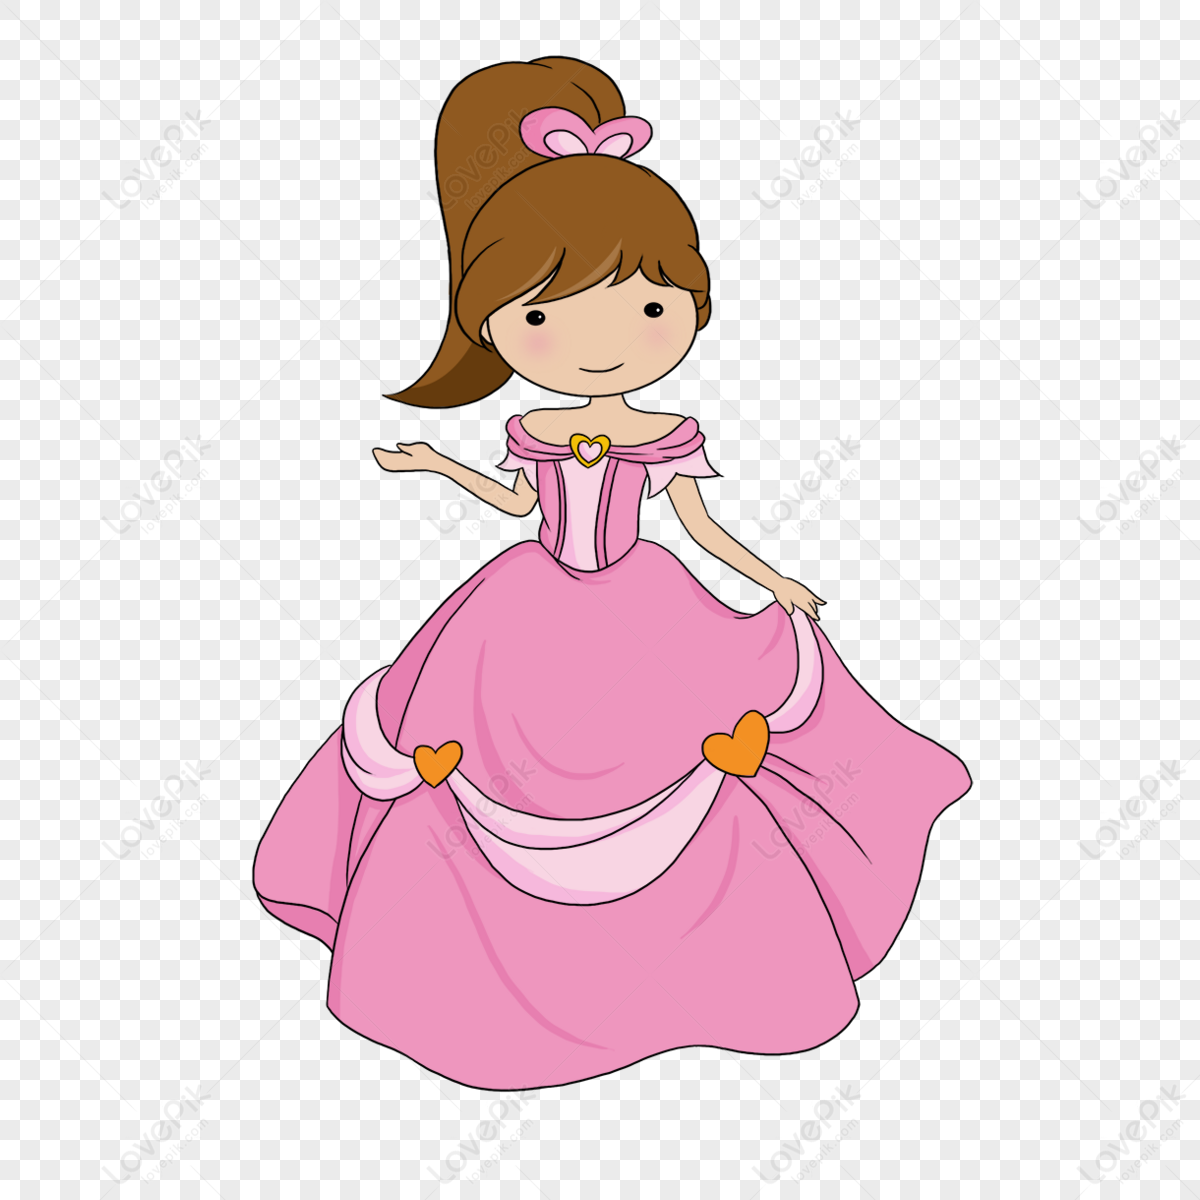 High ponytail pink princess clipart,simple,cartoon princess,card png transparent image